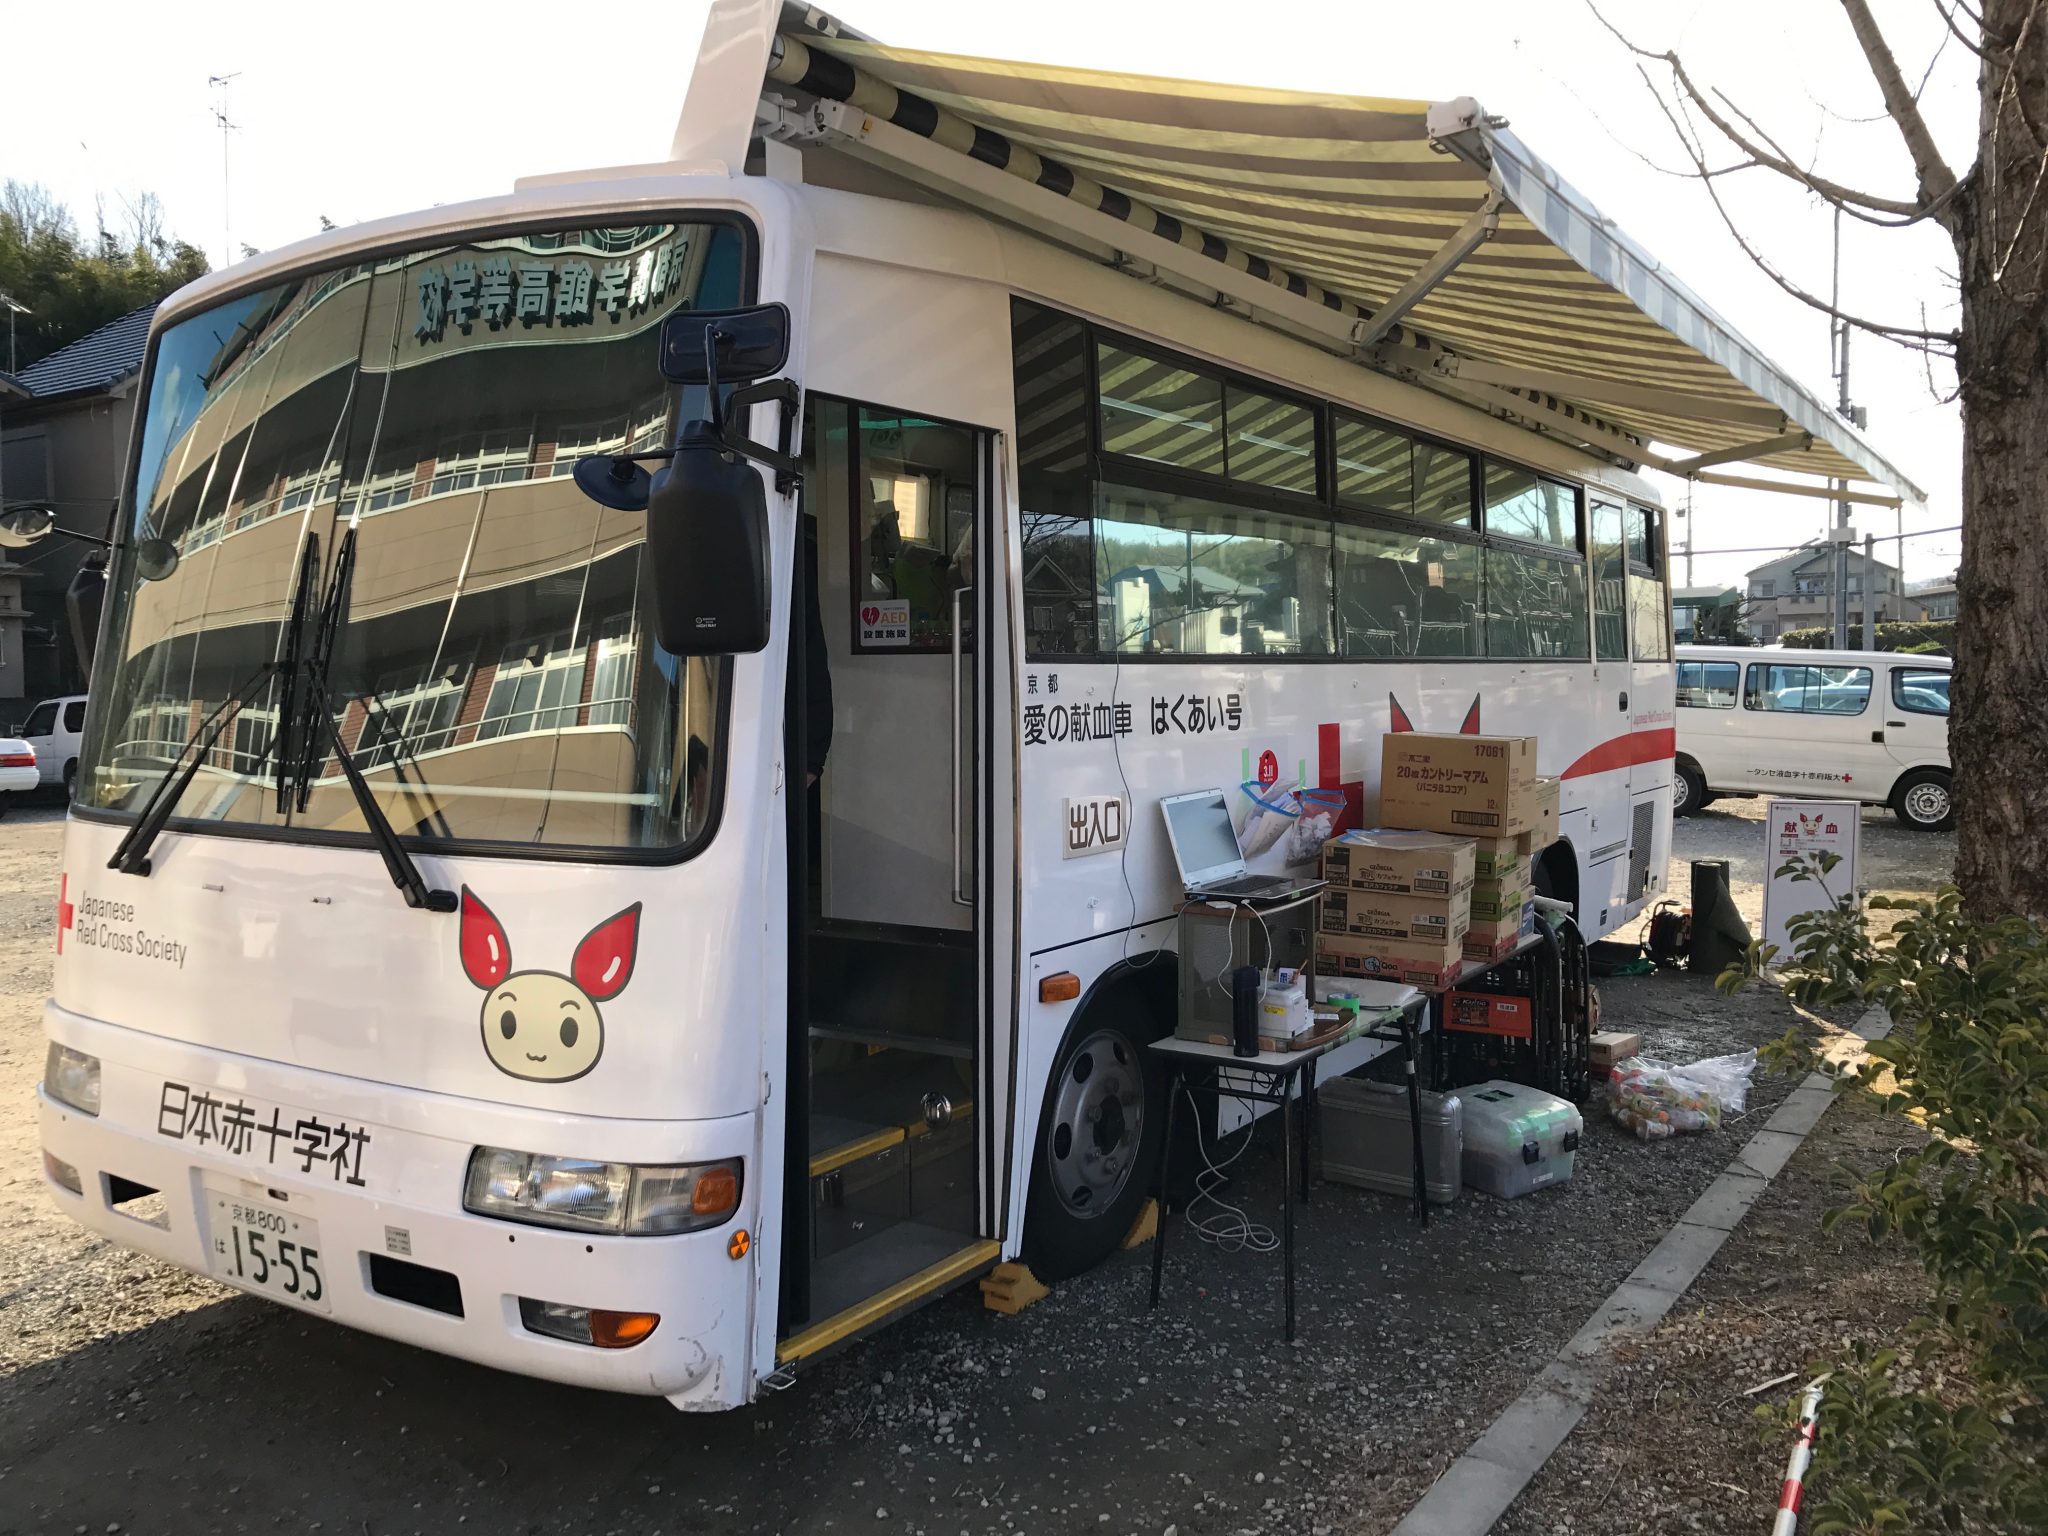 バス 献血 献血基準｜献血の流れ｜献血について｜日本赤十字社